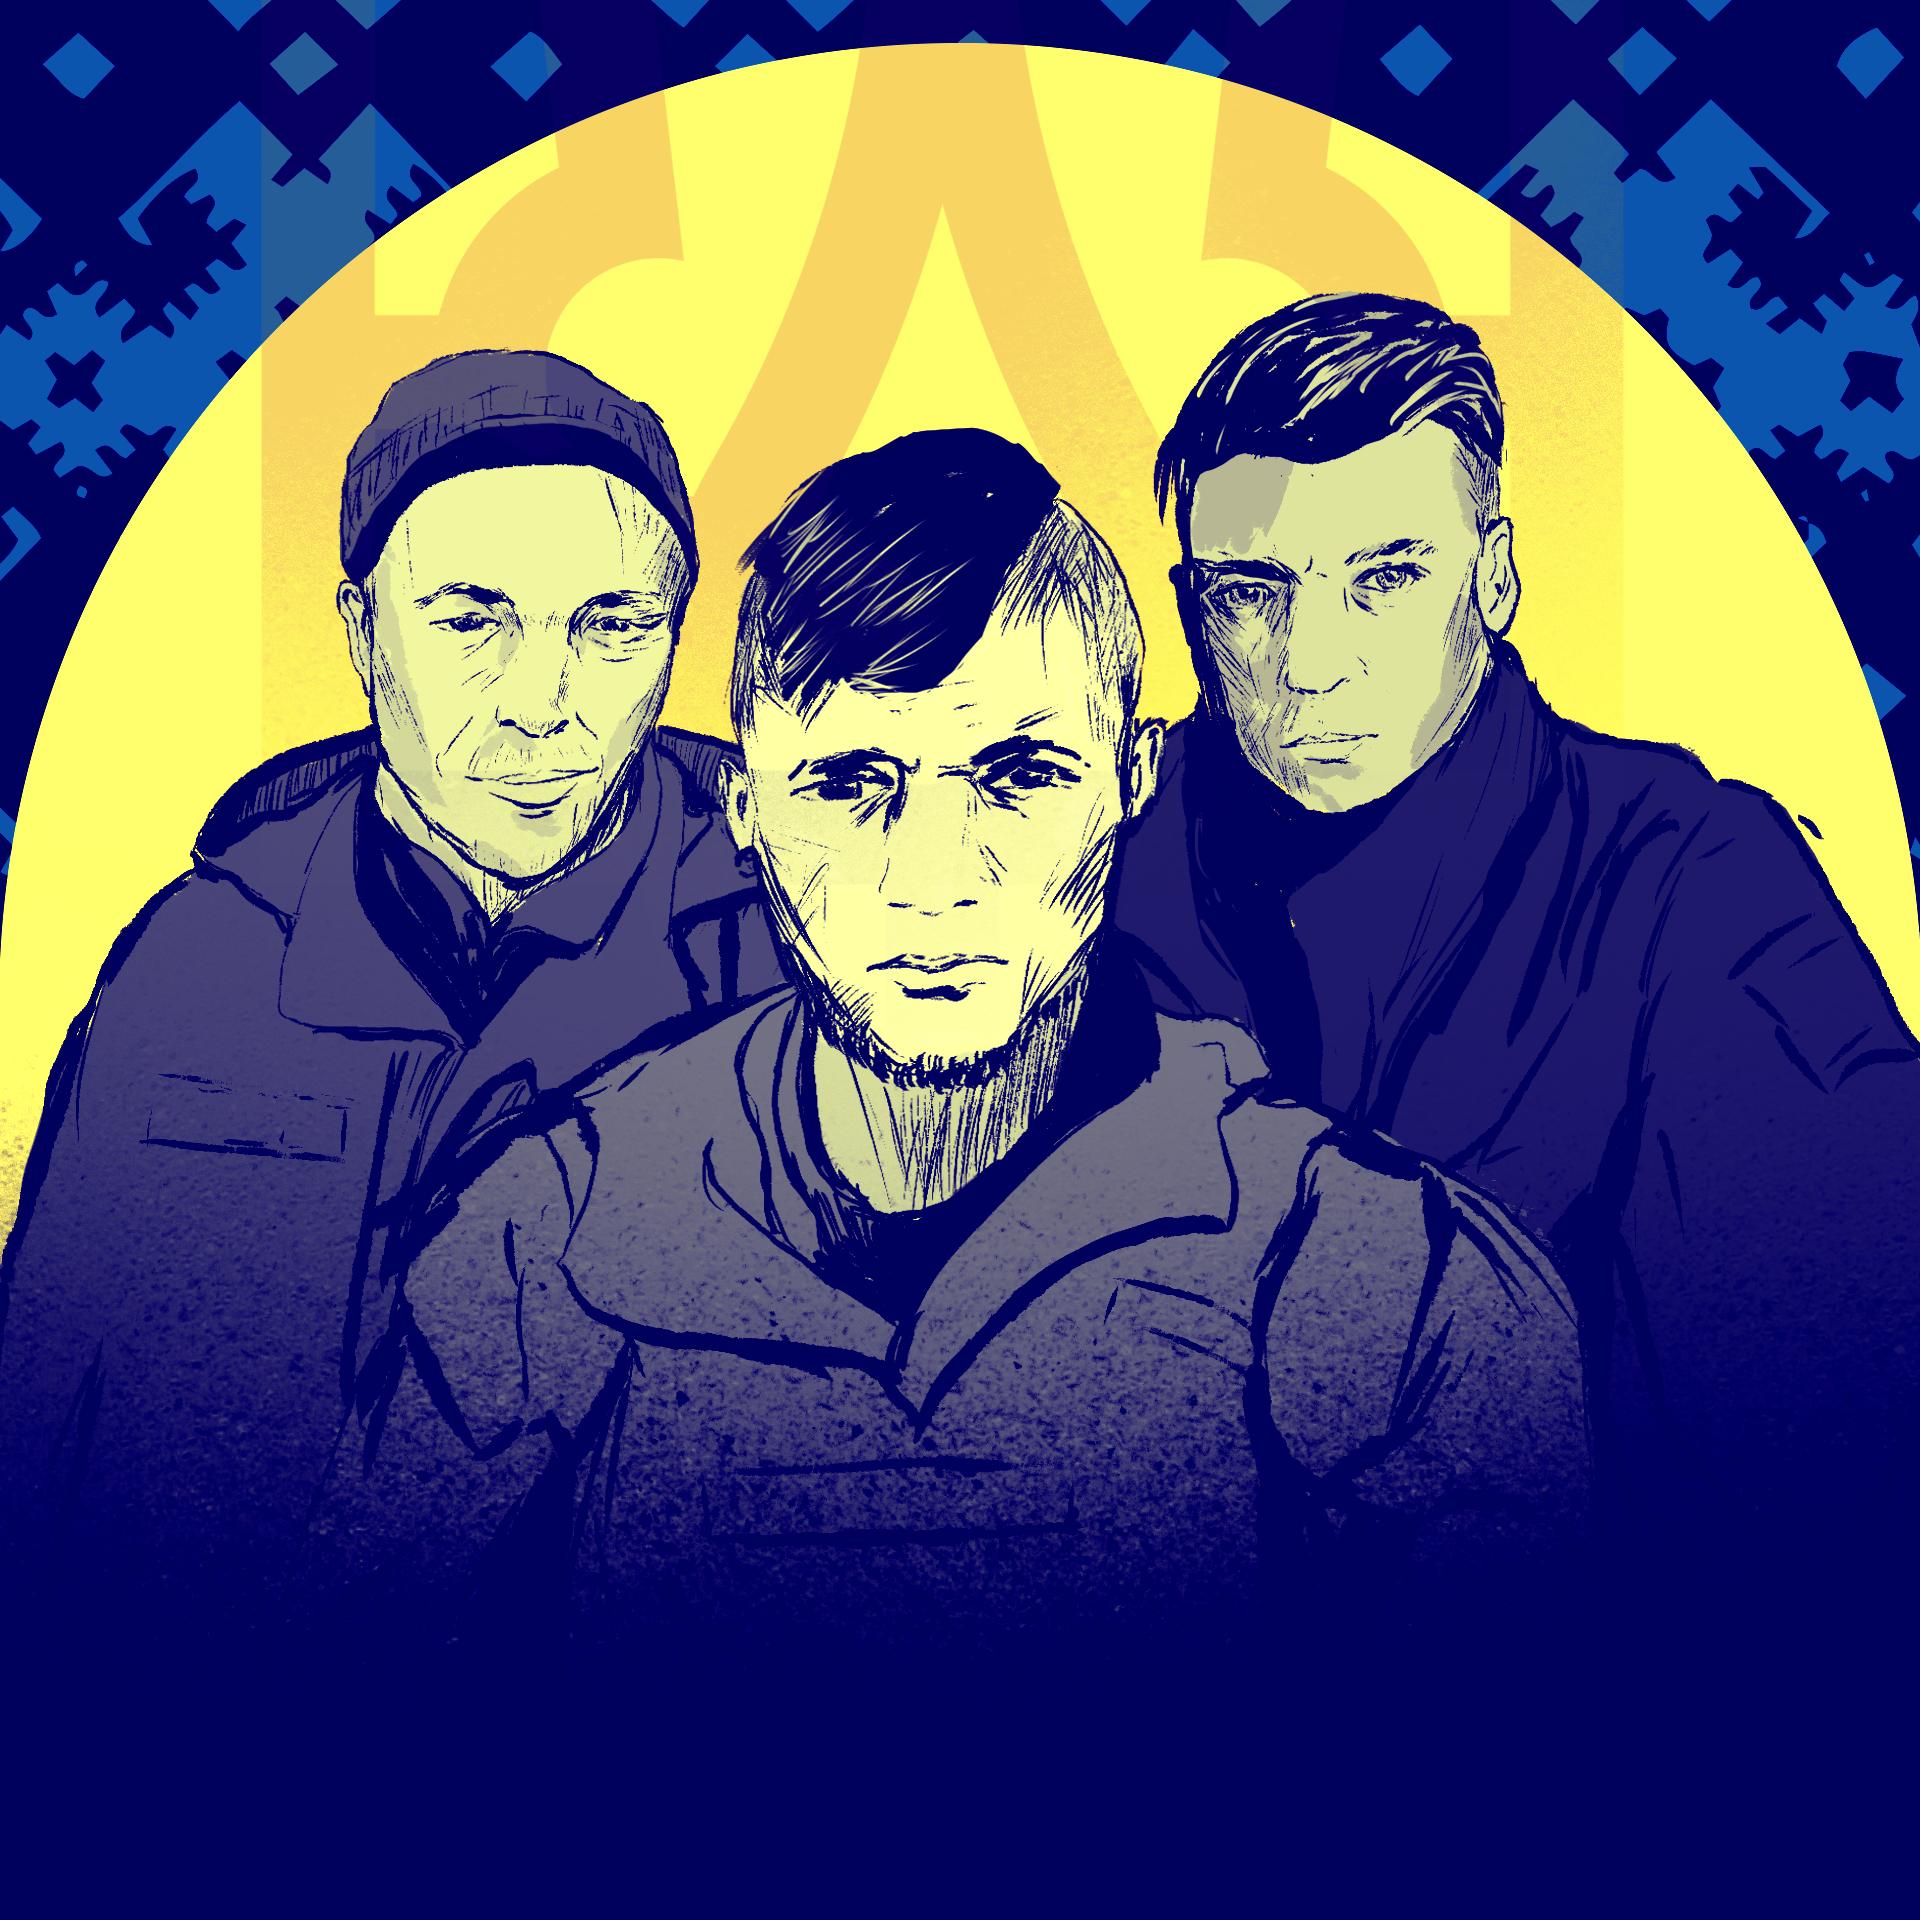 Trzech żołnierzy na żółto-niebieskim tle